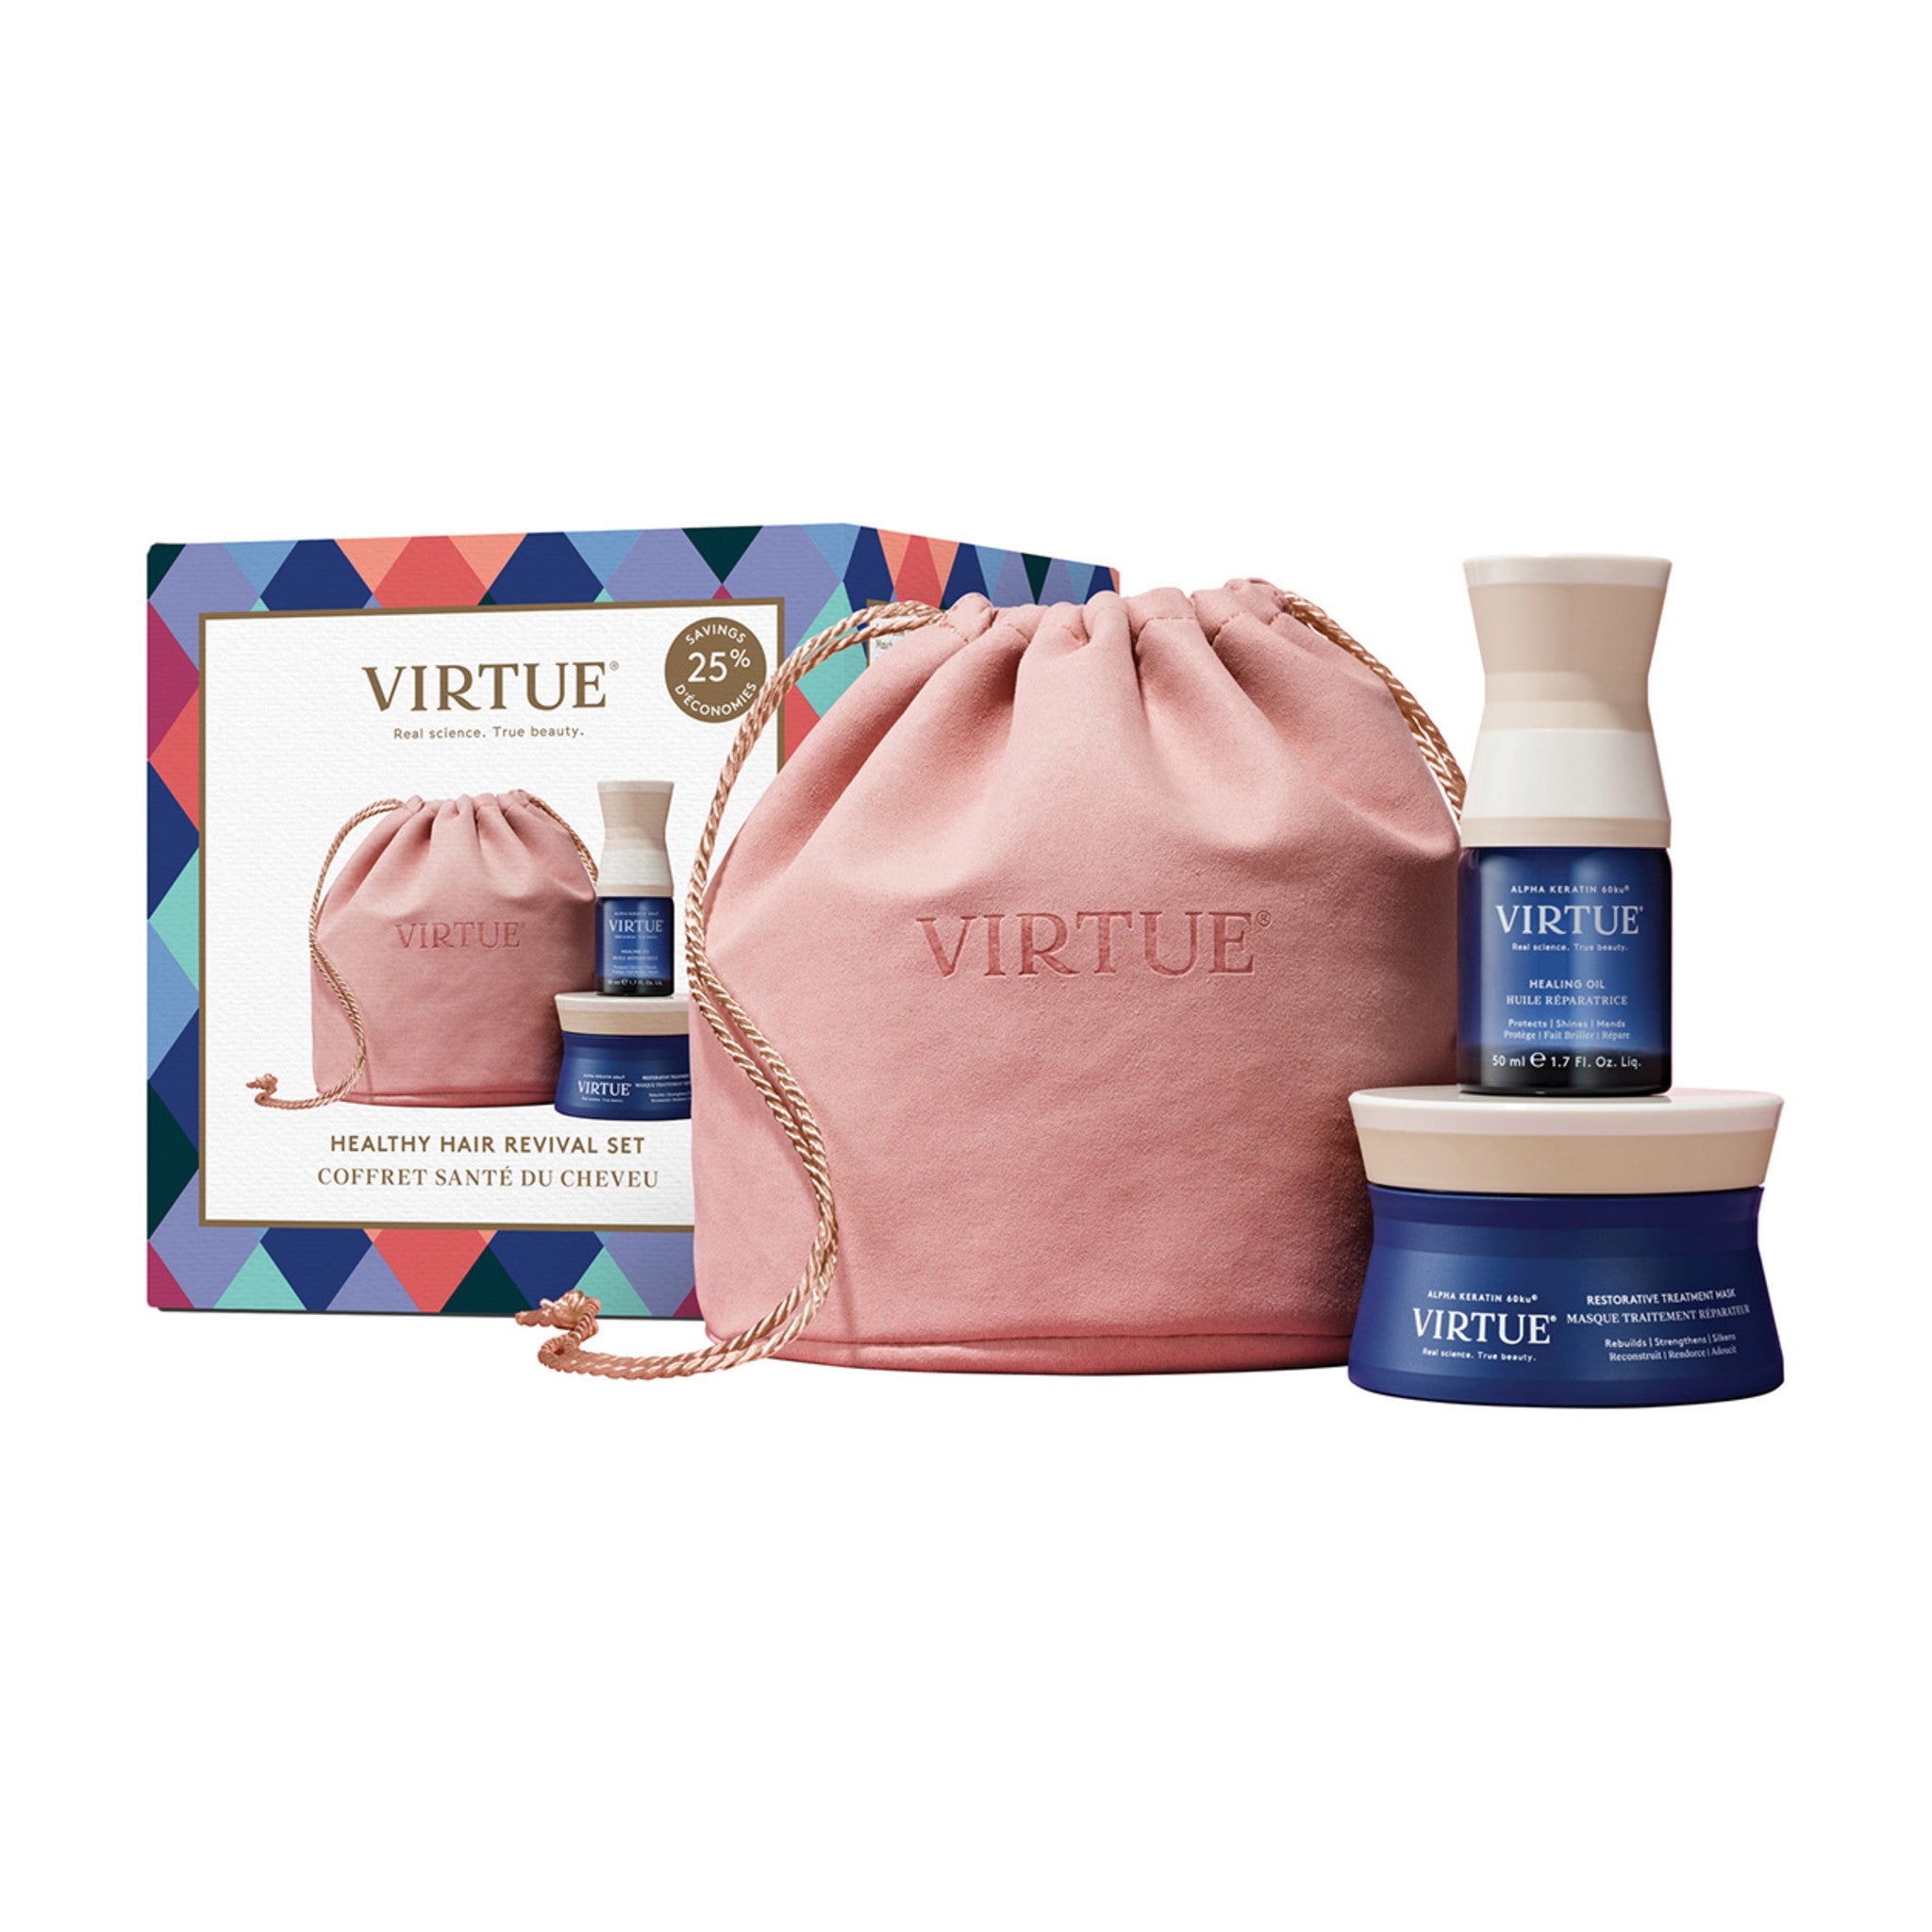 Virtue Holiday Healthy Hair Revival Kit main image.